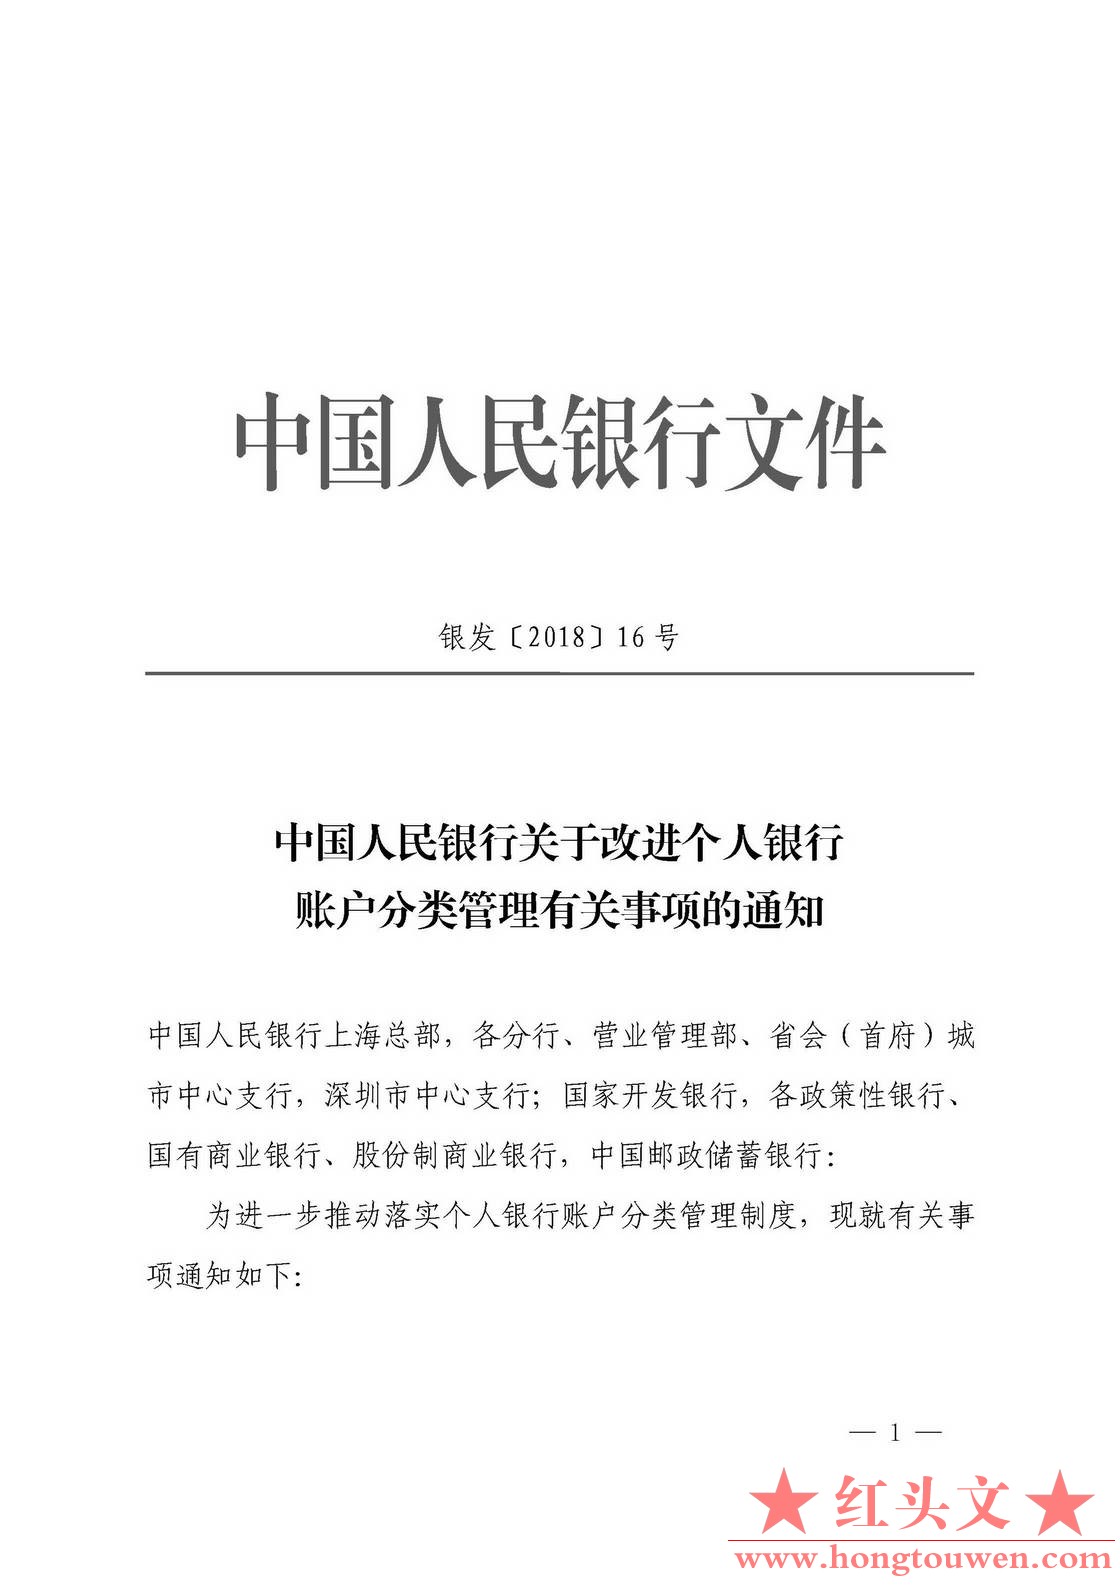 银发[2018]16号-中国人民银行关于改进个人银行账户分类管理有关事项的通知_页面_1.jpg.jpg